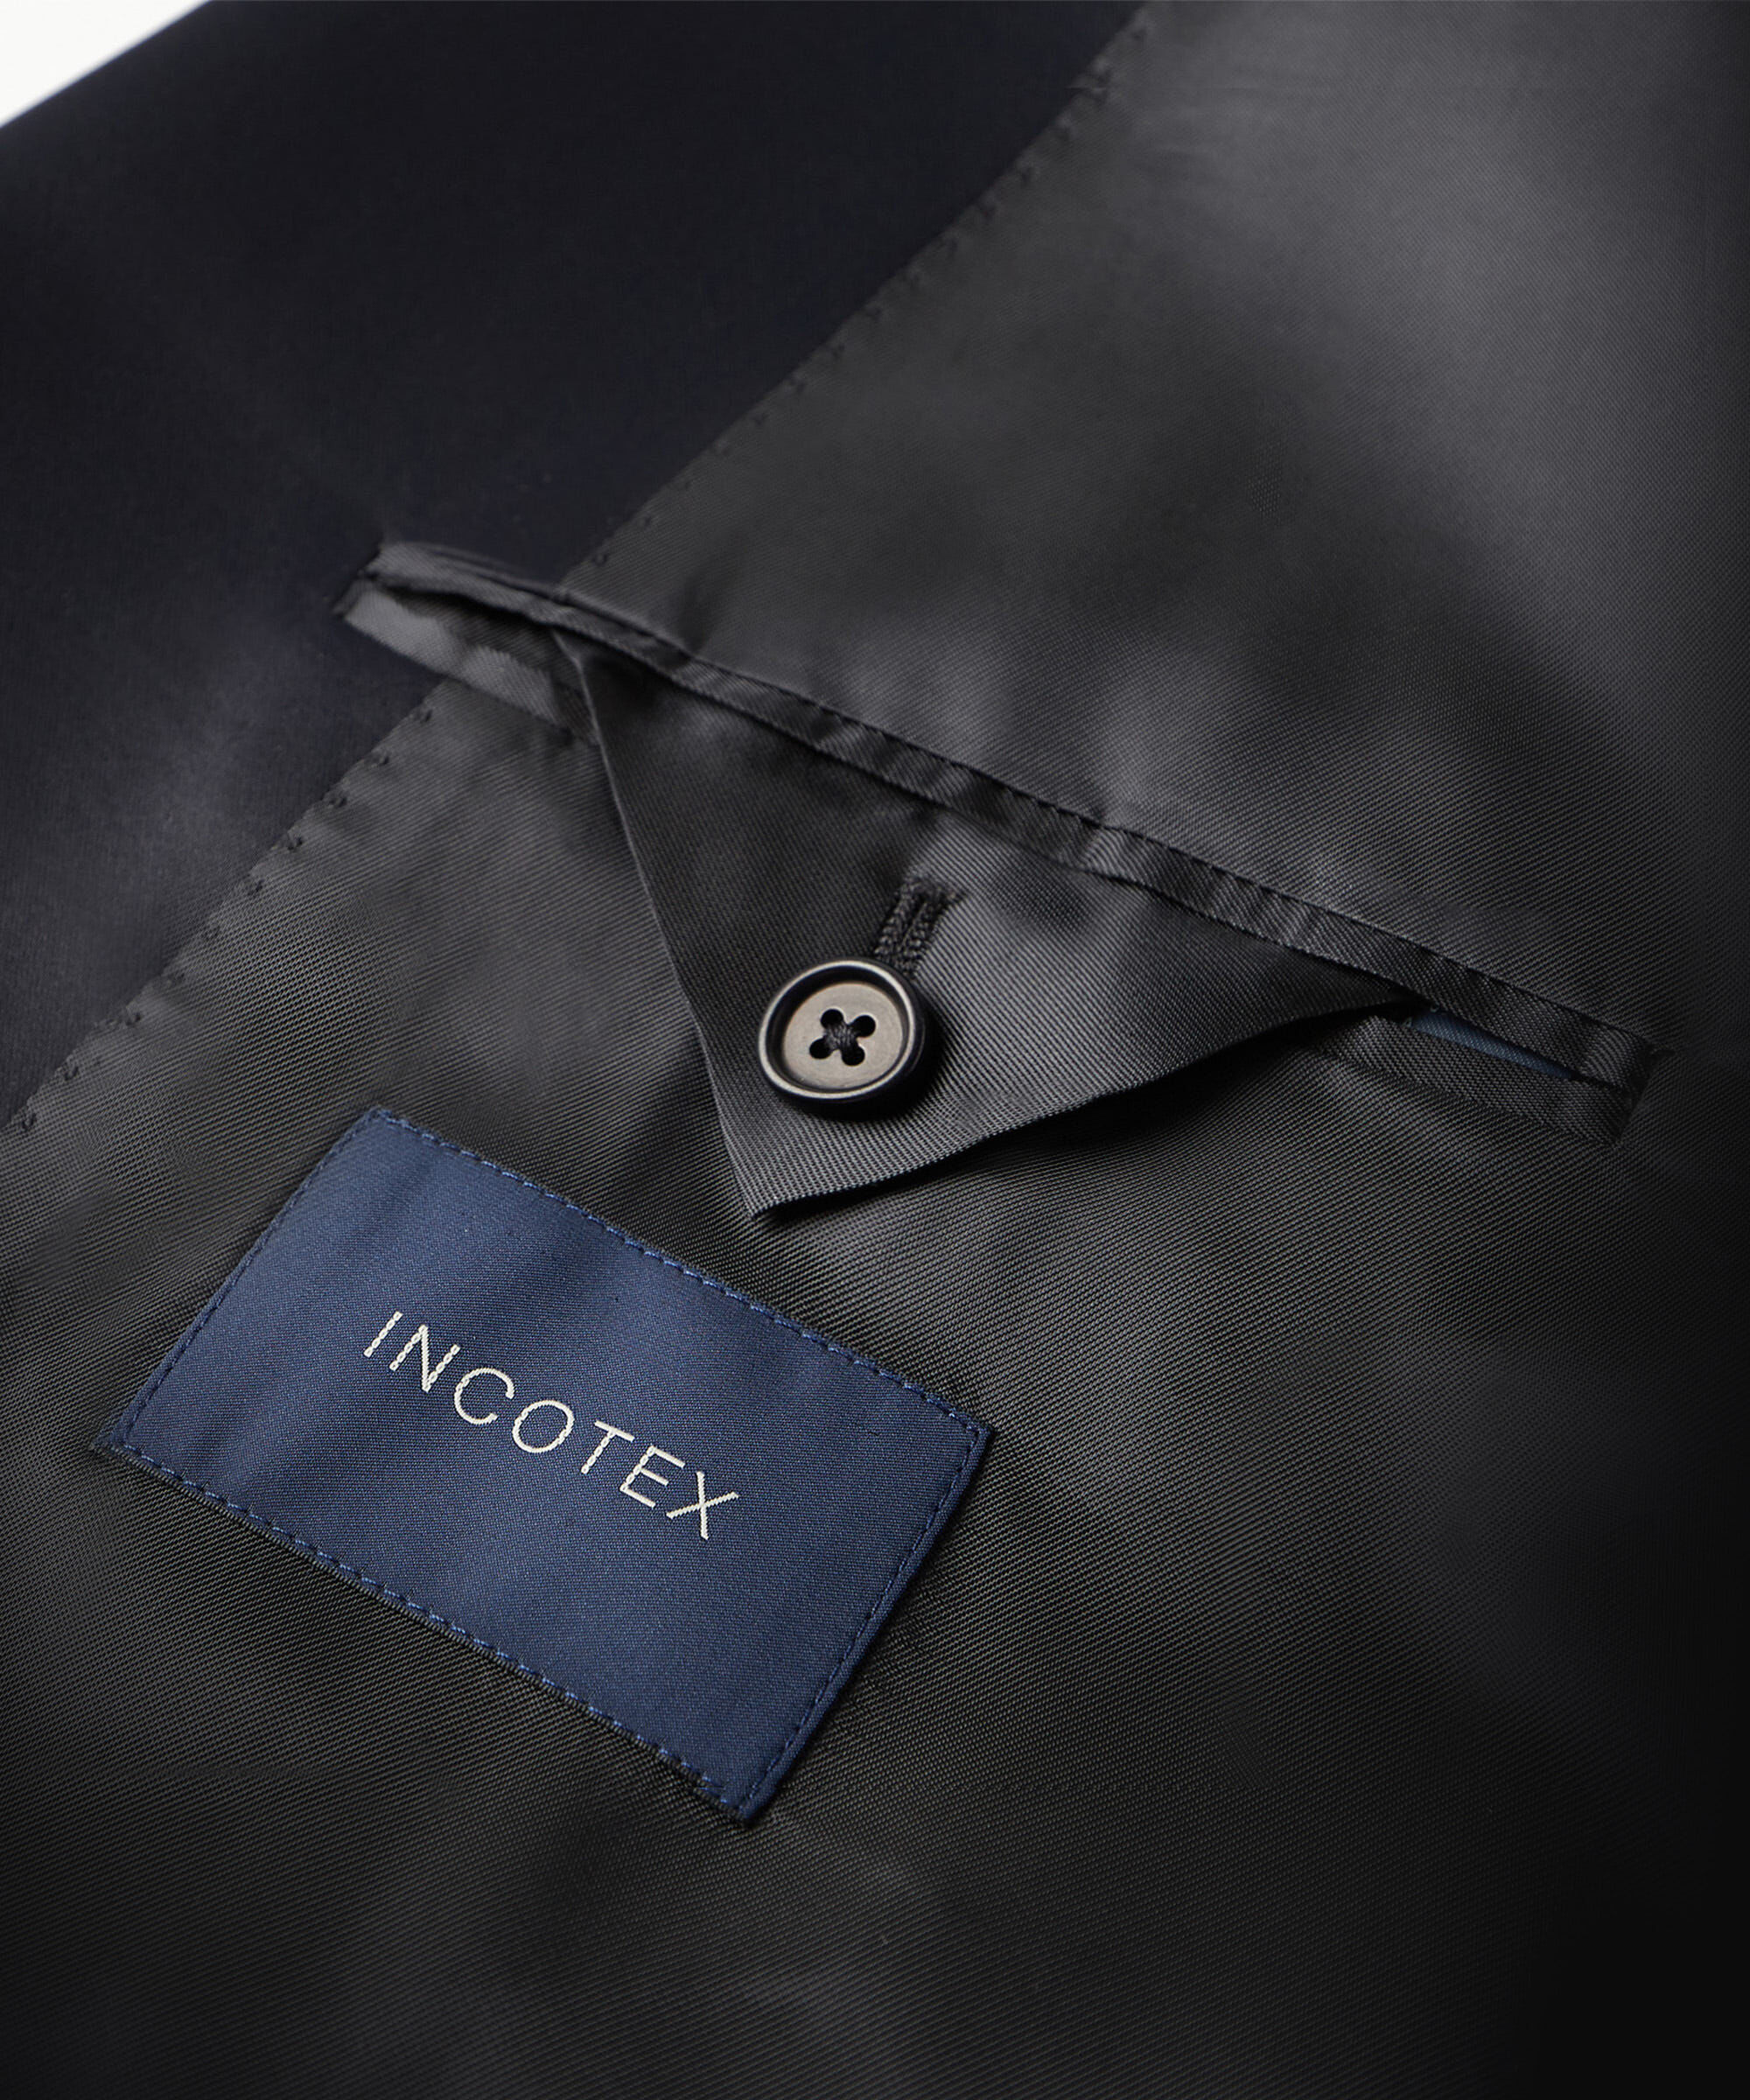 HUGO BOSS DRAGO Lanificio In Biella grey suit blazer jacket 38L 94 long  Medium £199.00 - PicClick UK